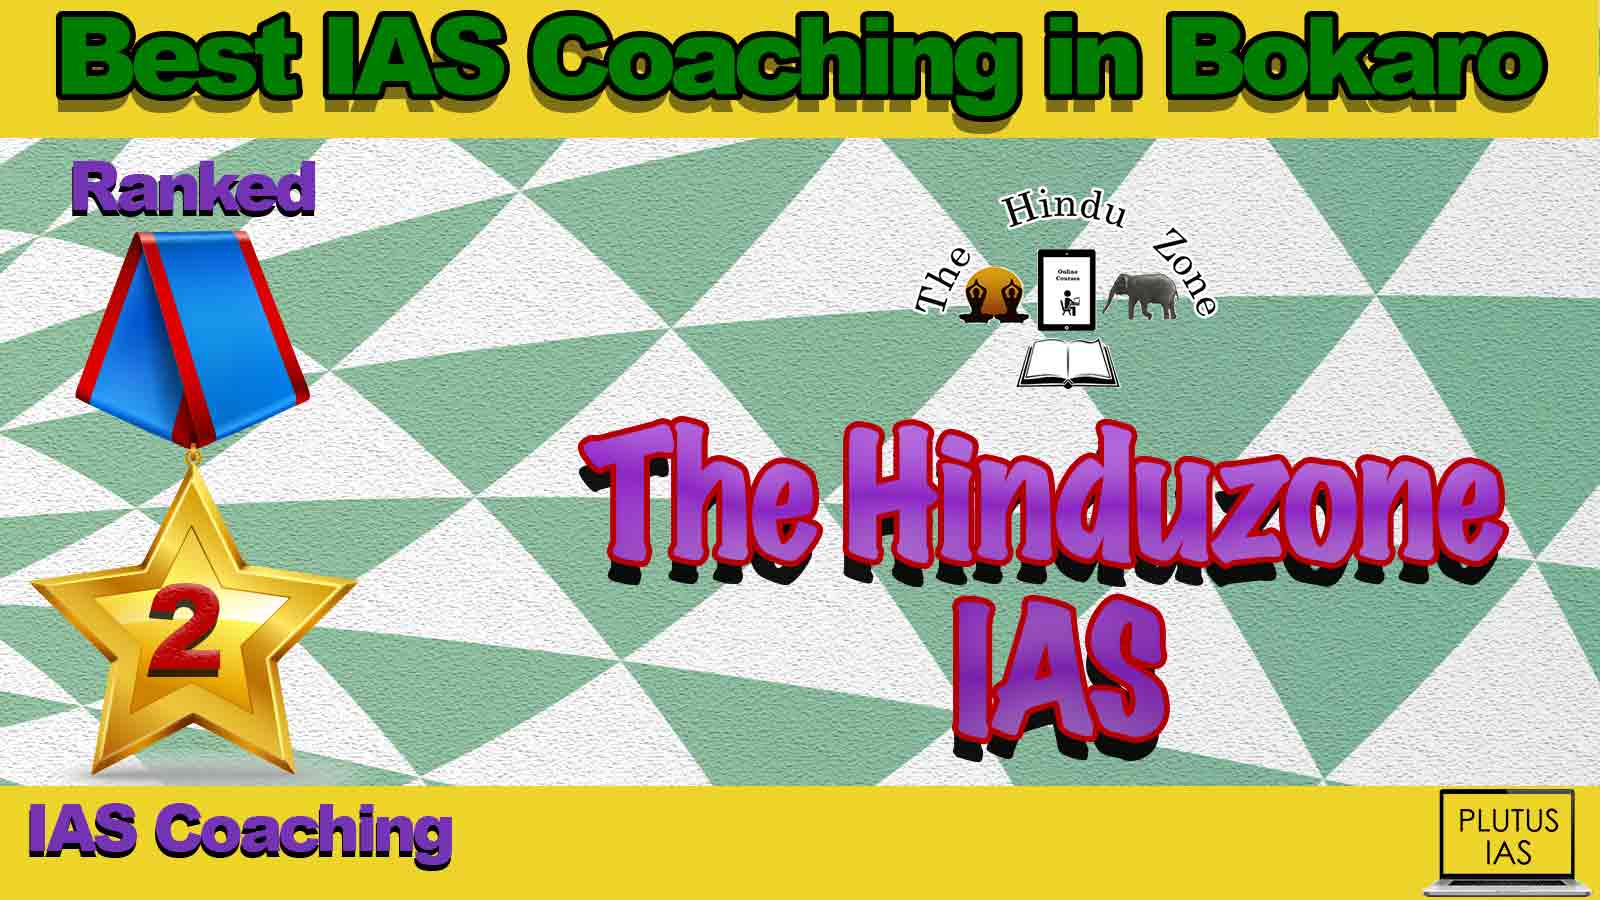 Top IAS Coaching in Bokaro